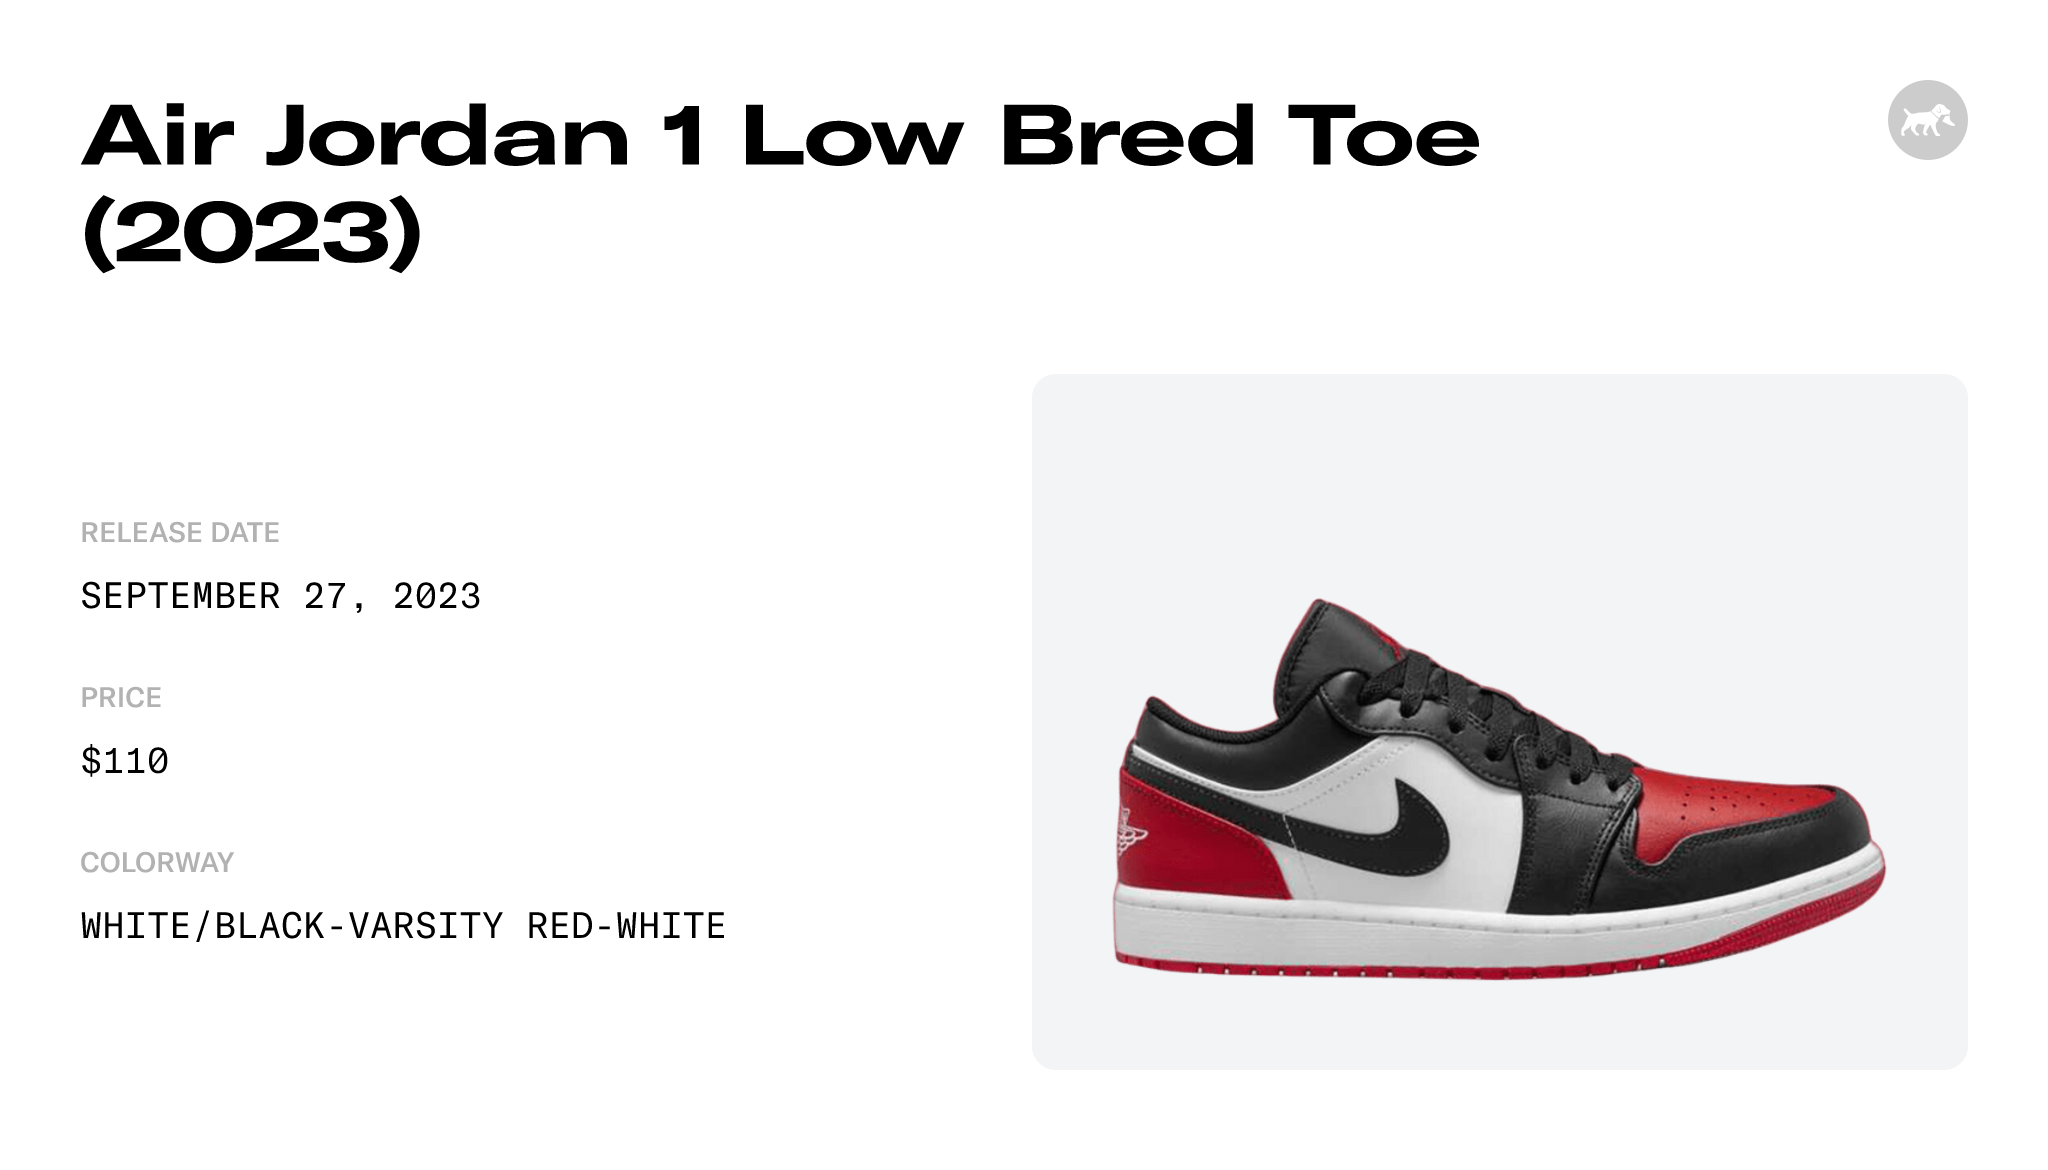 Air Jordan 1 Low Bred Toe (2023) - 553558-161 Raffles and Release Date